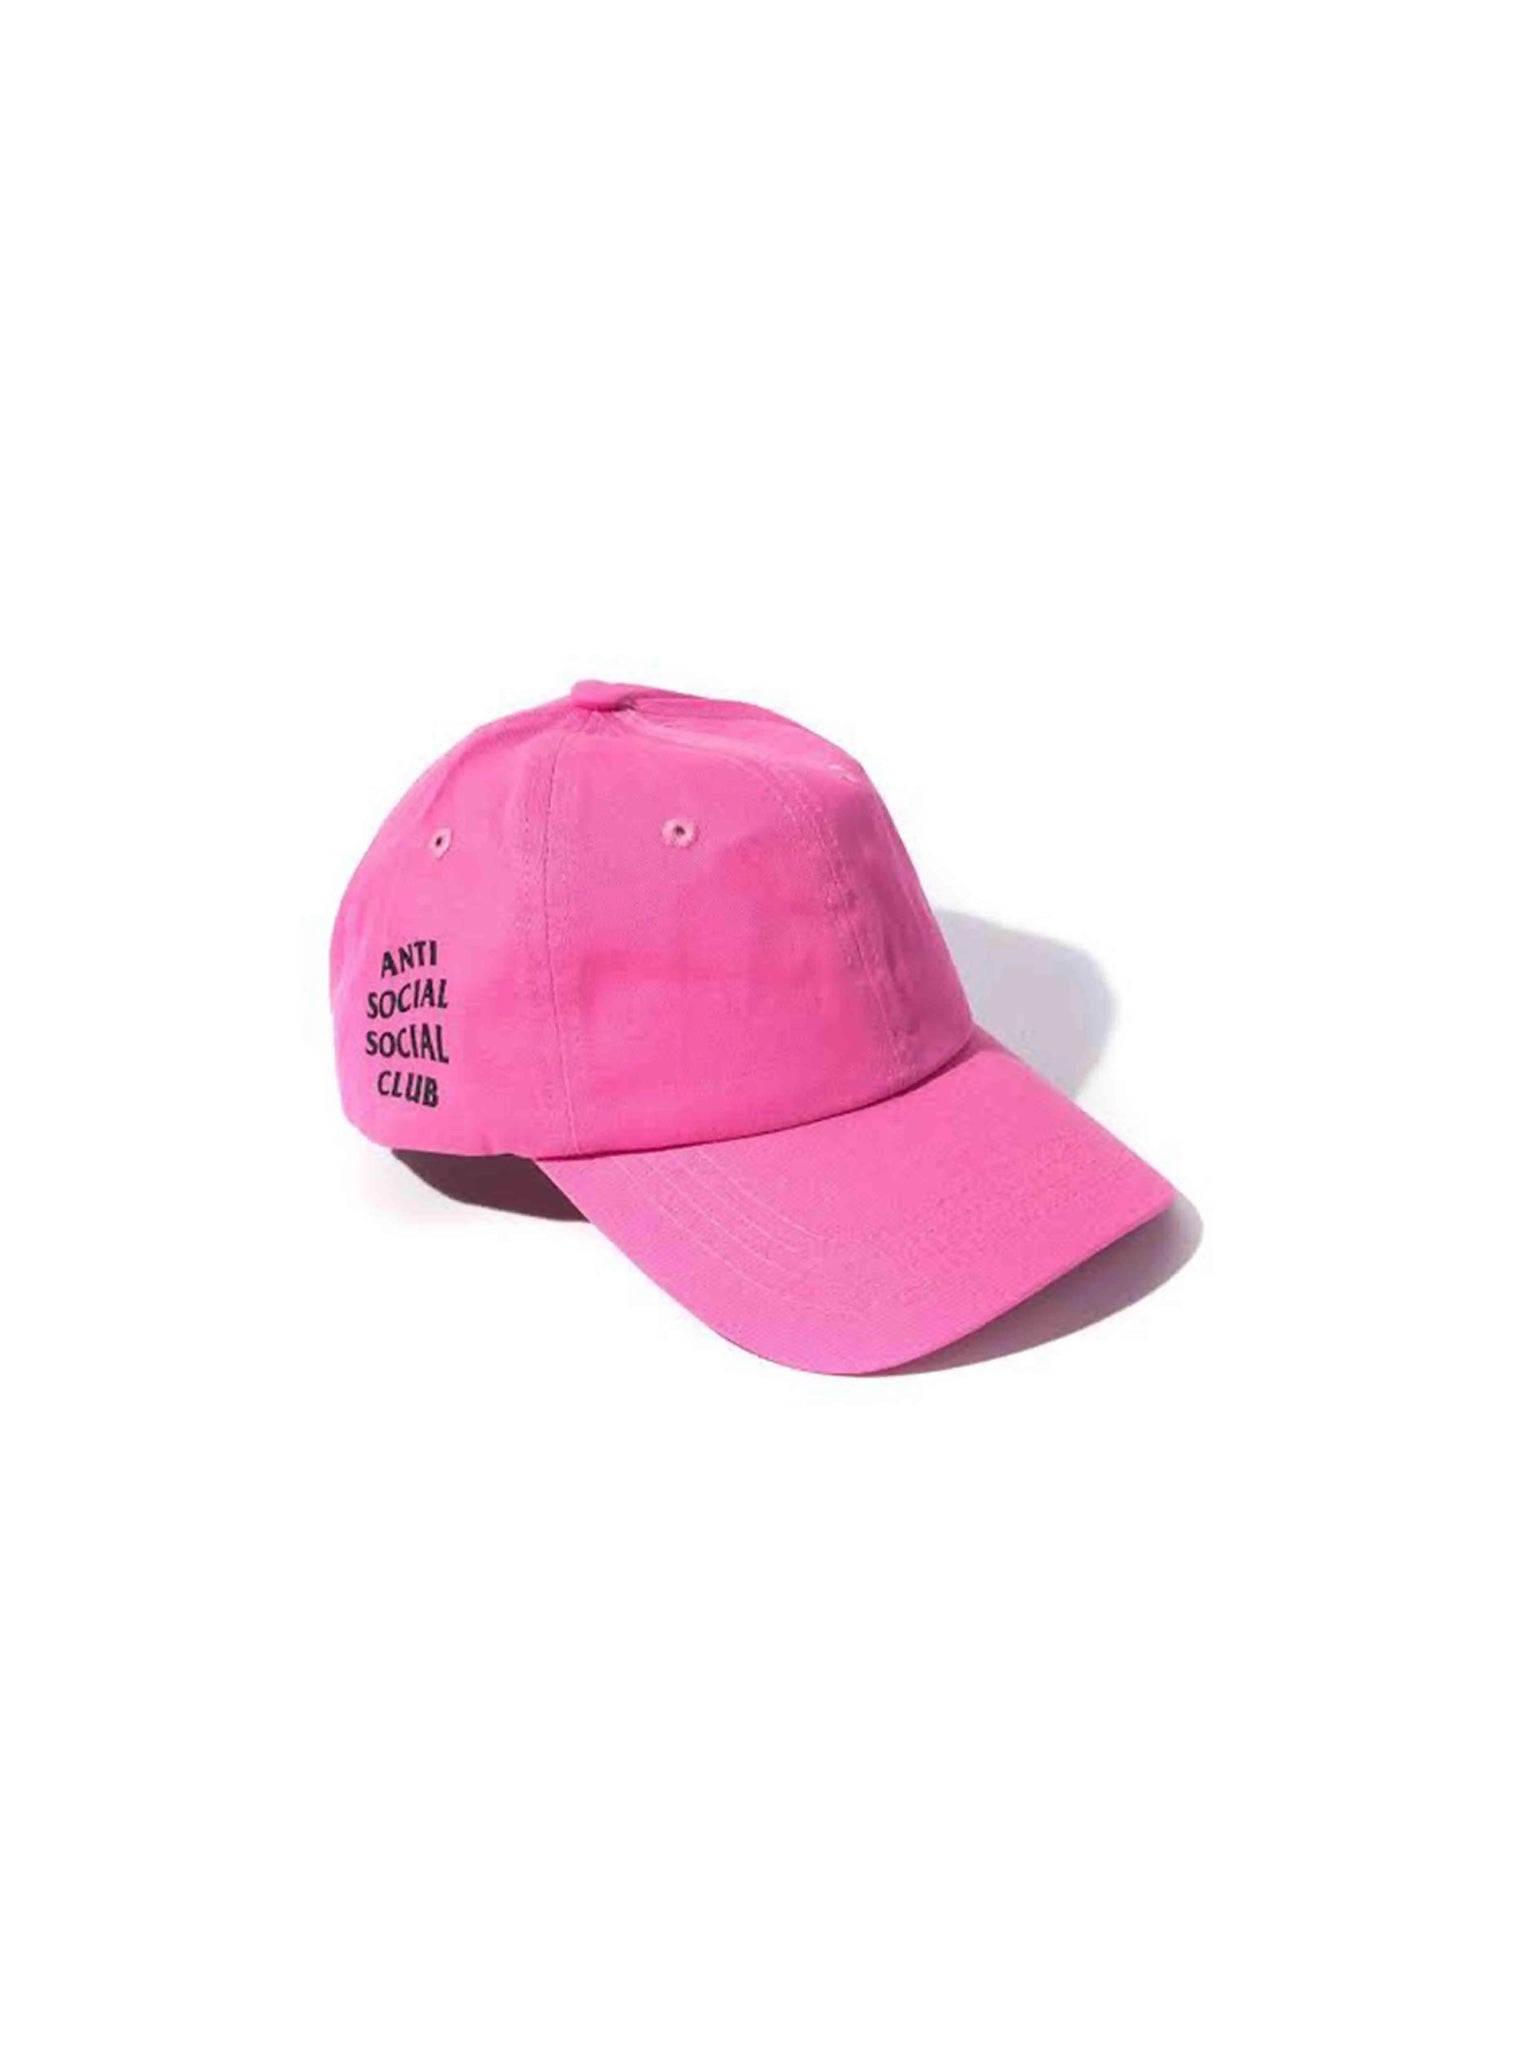 Anti Social Social Club Weird Cap Hot Pink Prior